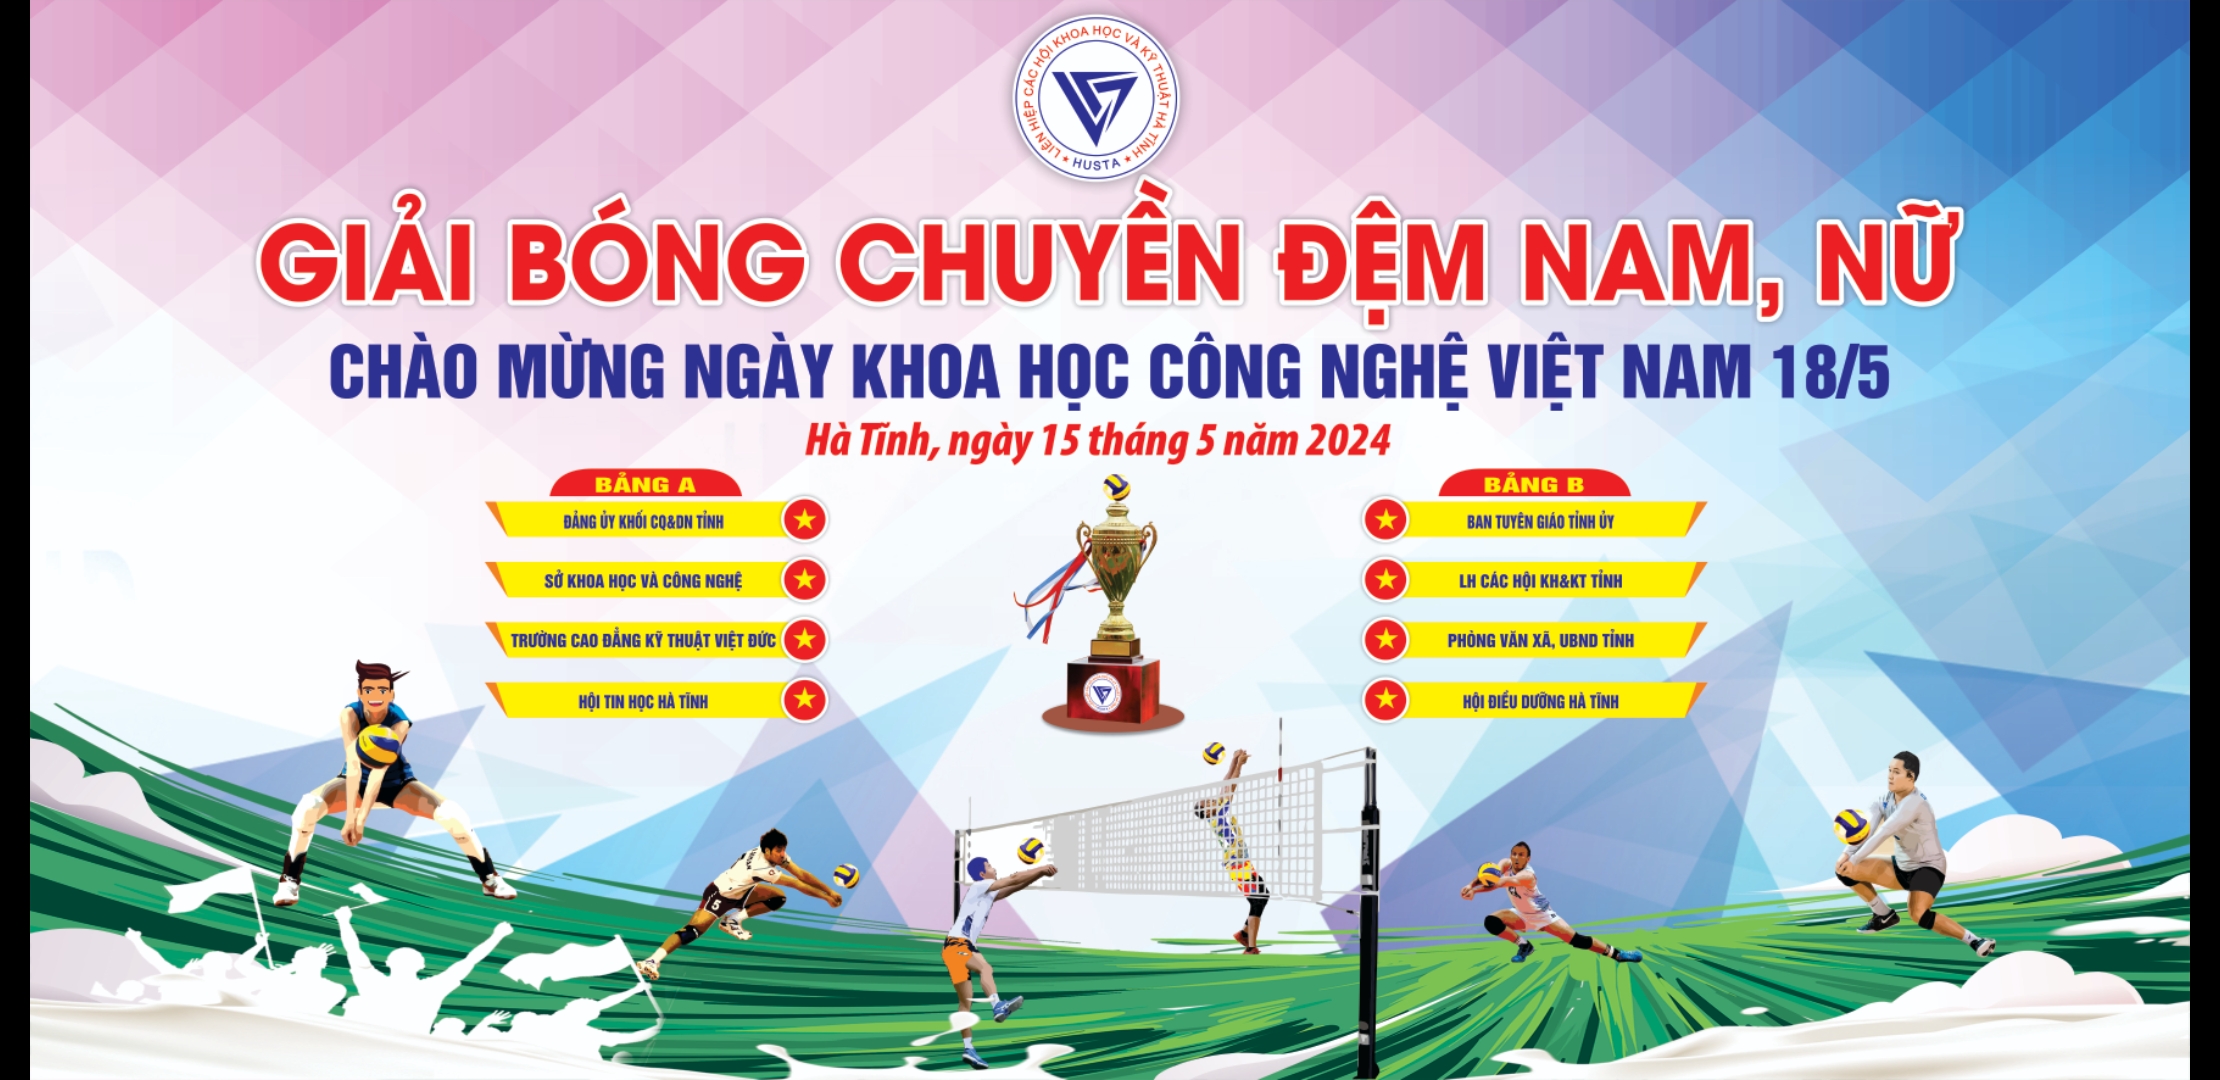 Giải bóng chuyền chào mừng ngày KHCN Việt Nam được khởi tranh vào ngày 15/5